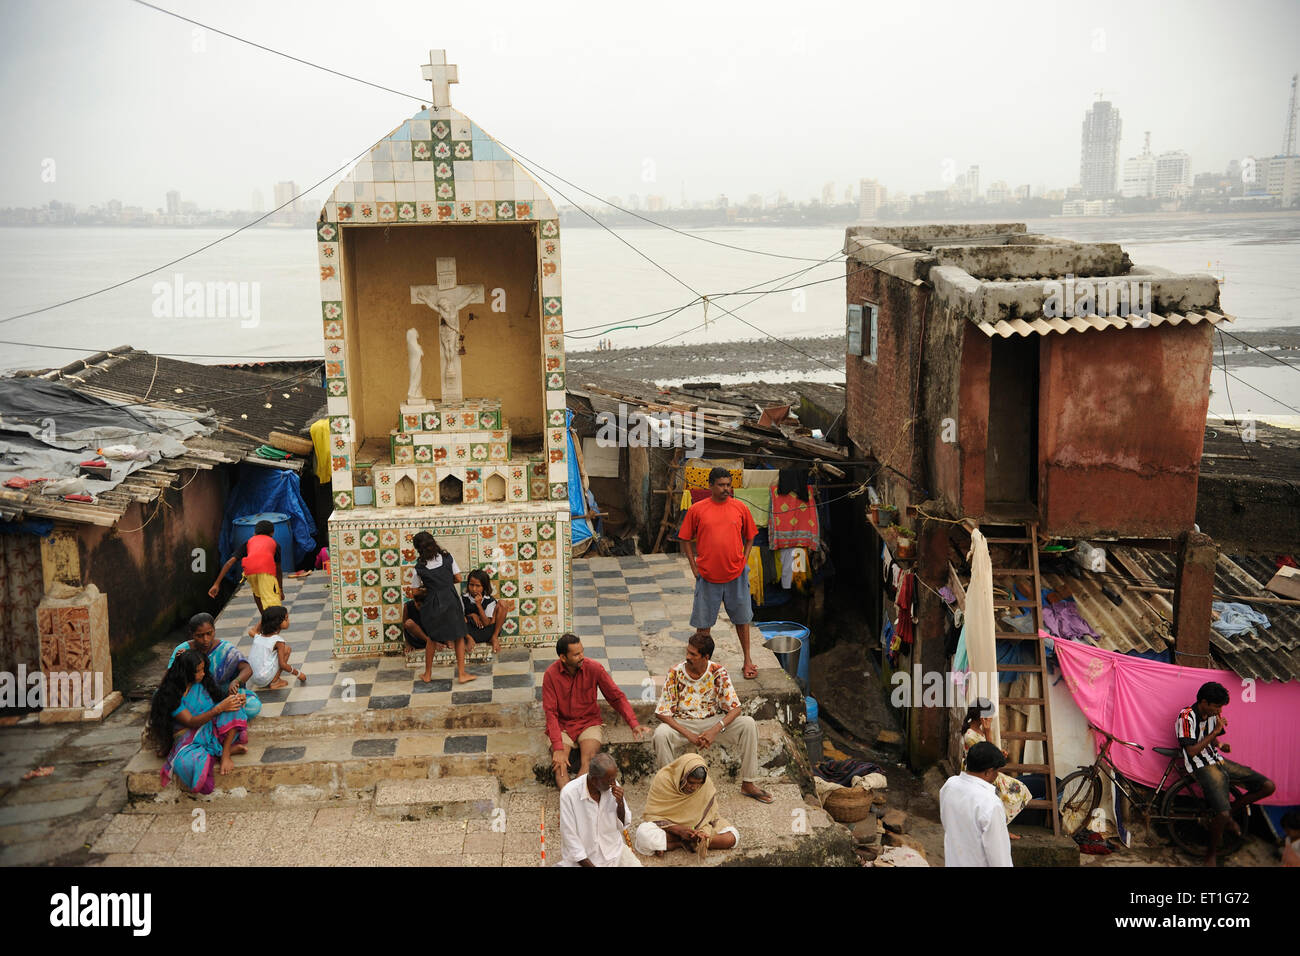 Scene of Worli village ; Bombay Mumbai ; Maharashtra ; India Stock Photo